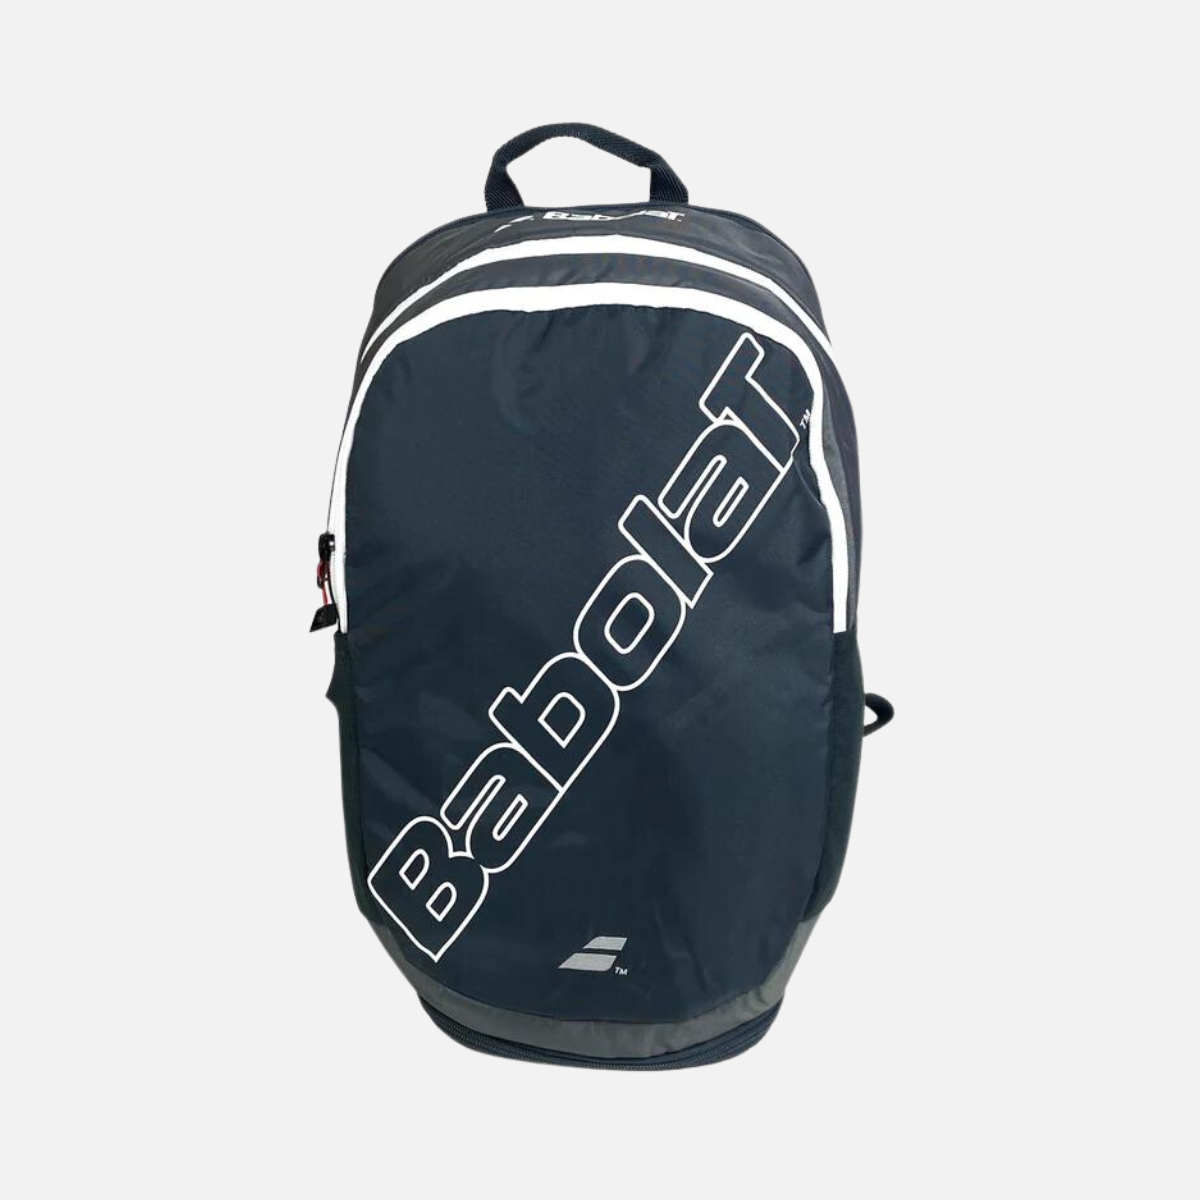 Babolat Evo Court Backpack -Grey